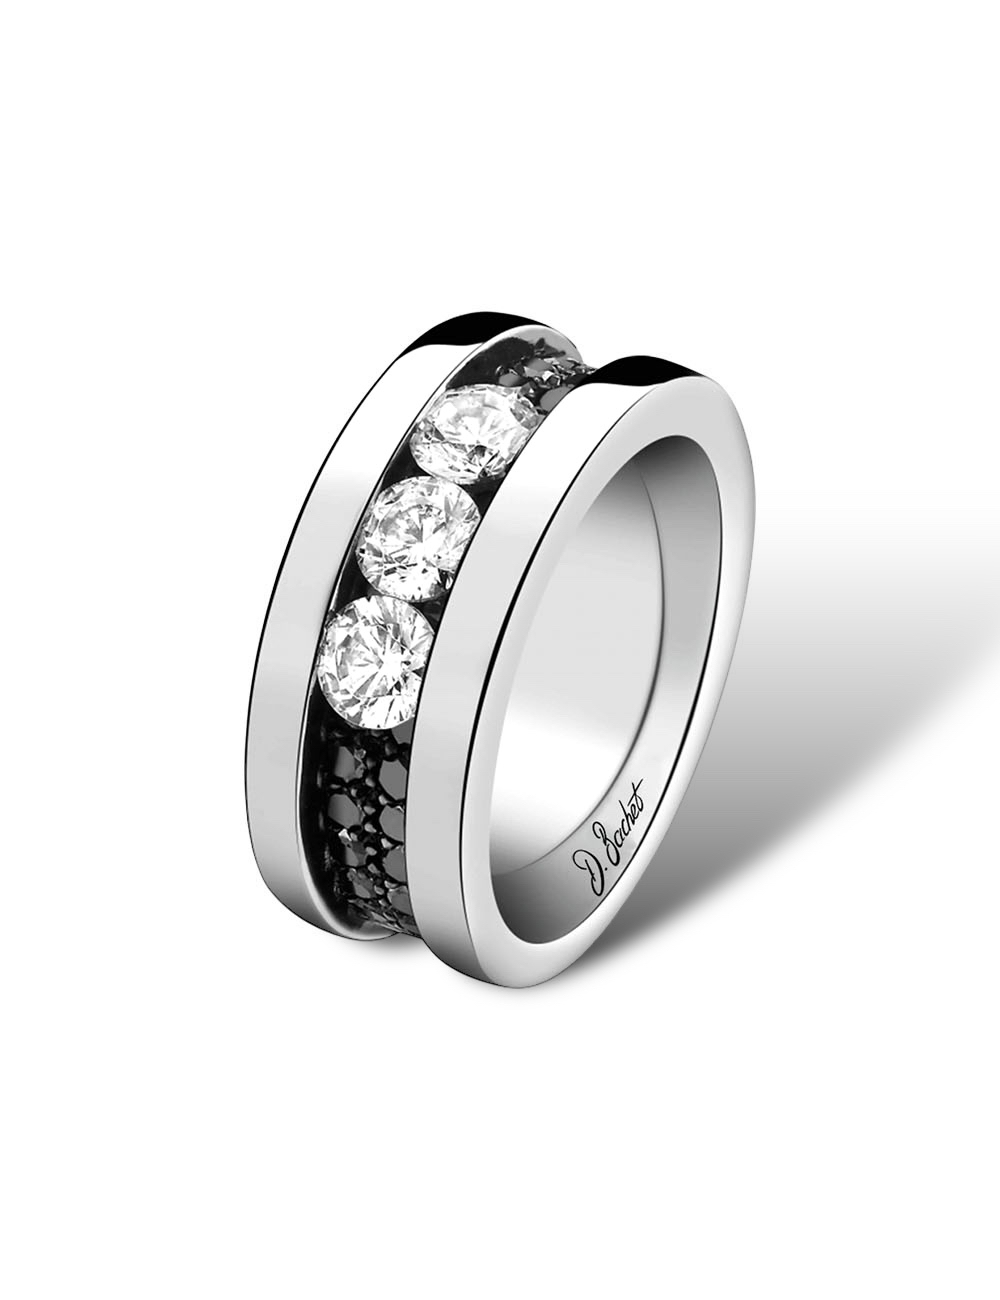 Bague femme luxe : trois diamants, symbole d'élégance et d'amour.